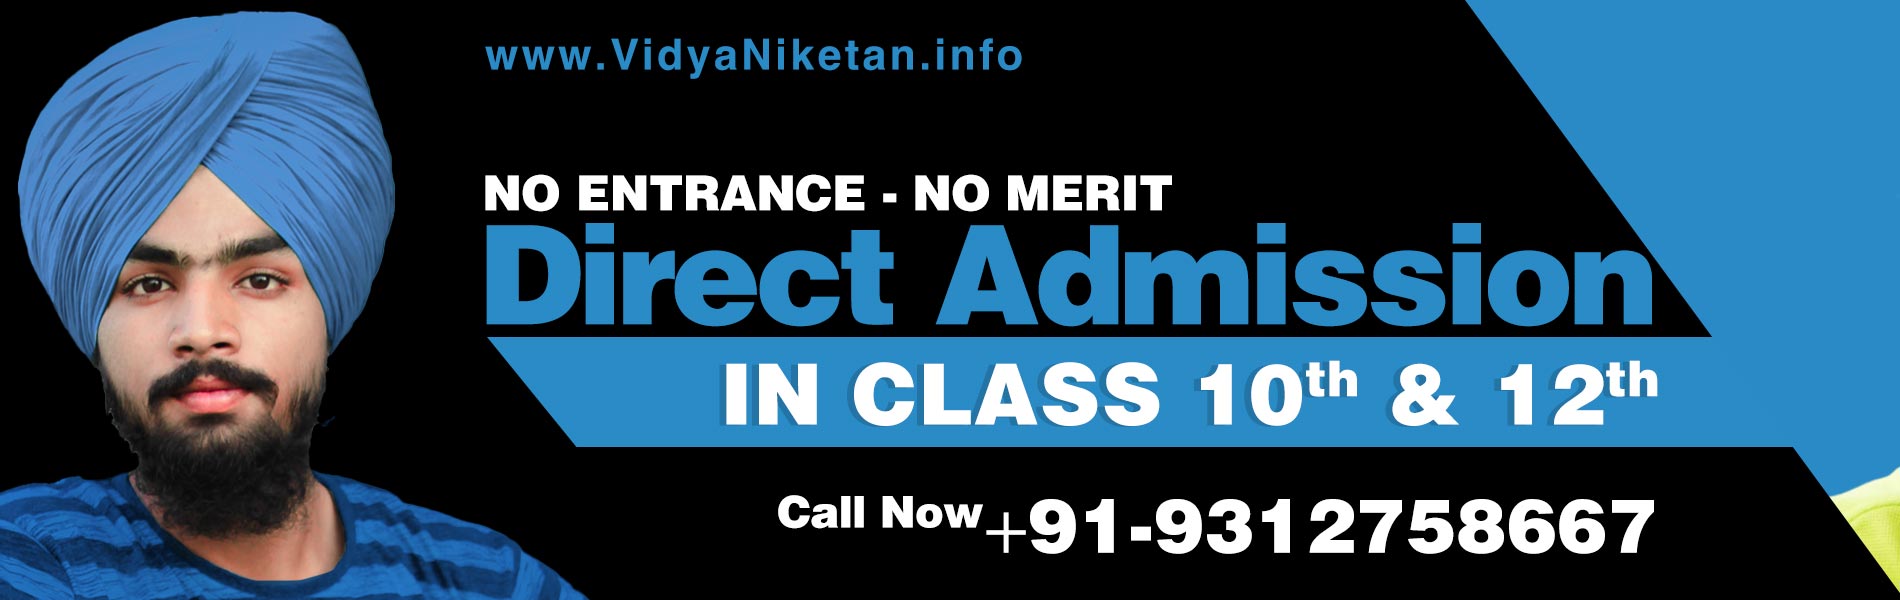 No Entrance, No Merit Direct Admission at Vidya Niketan